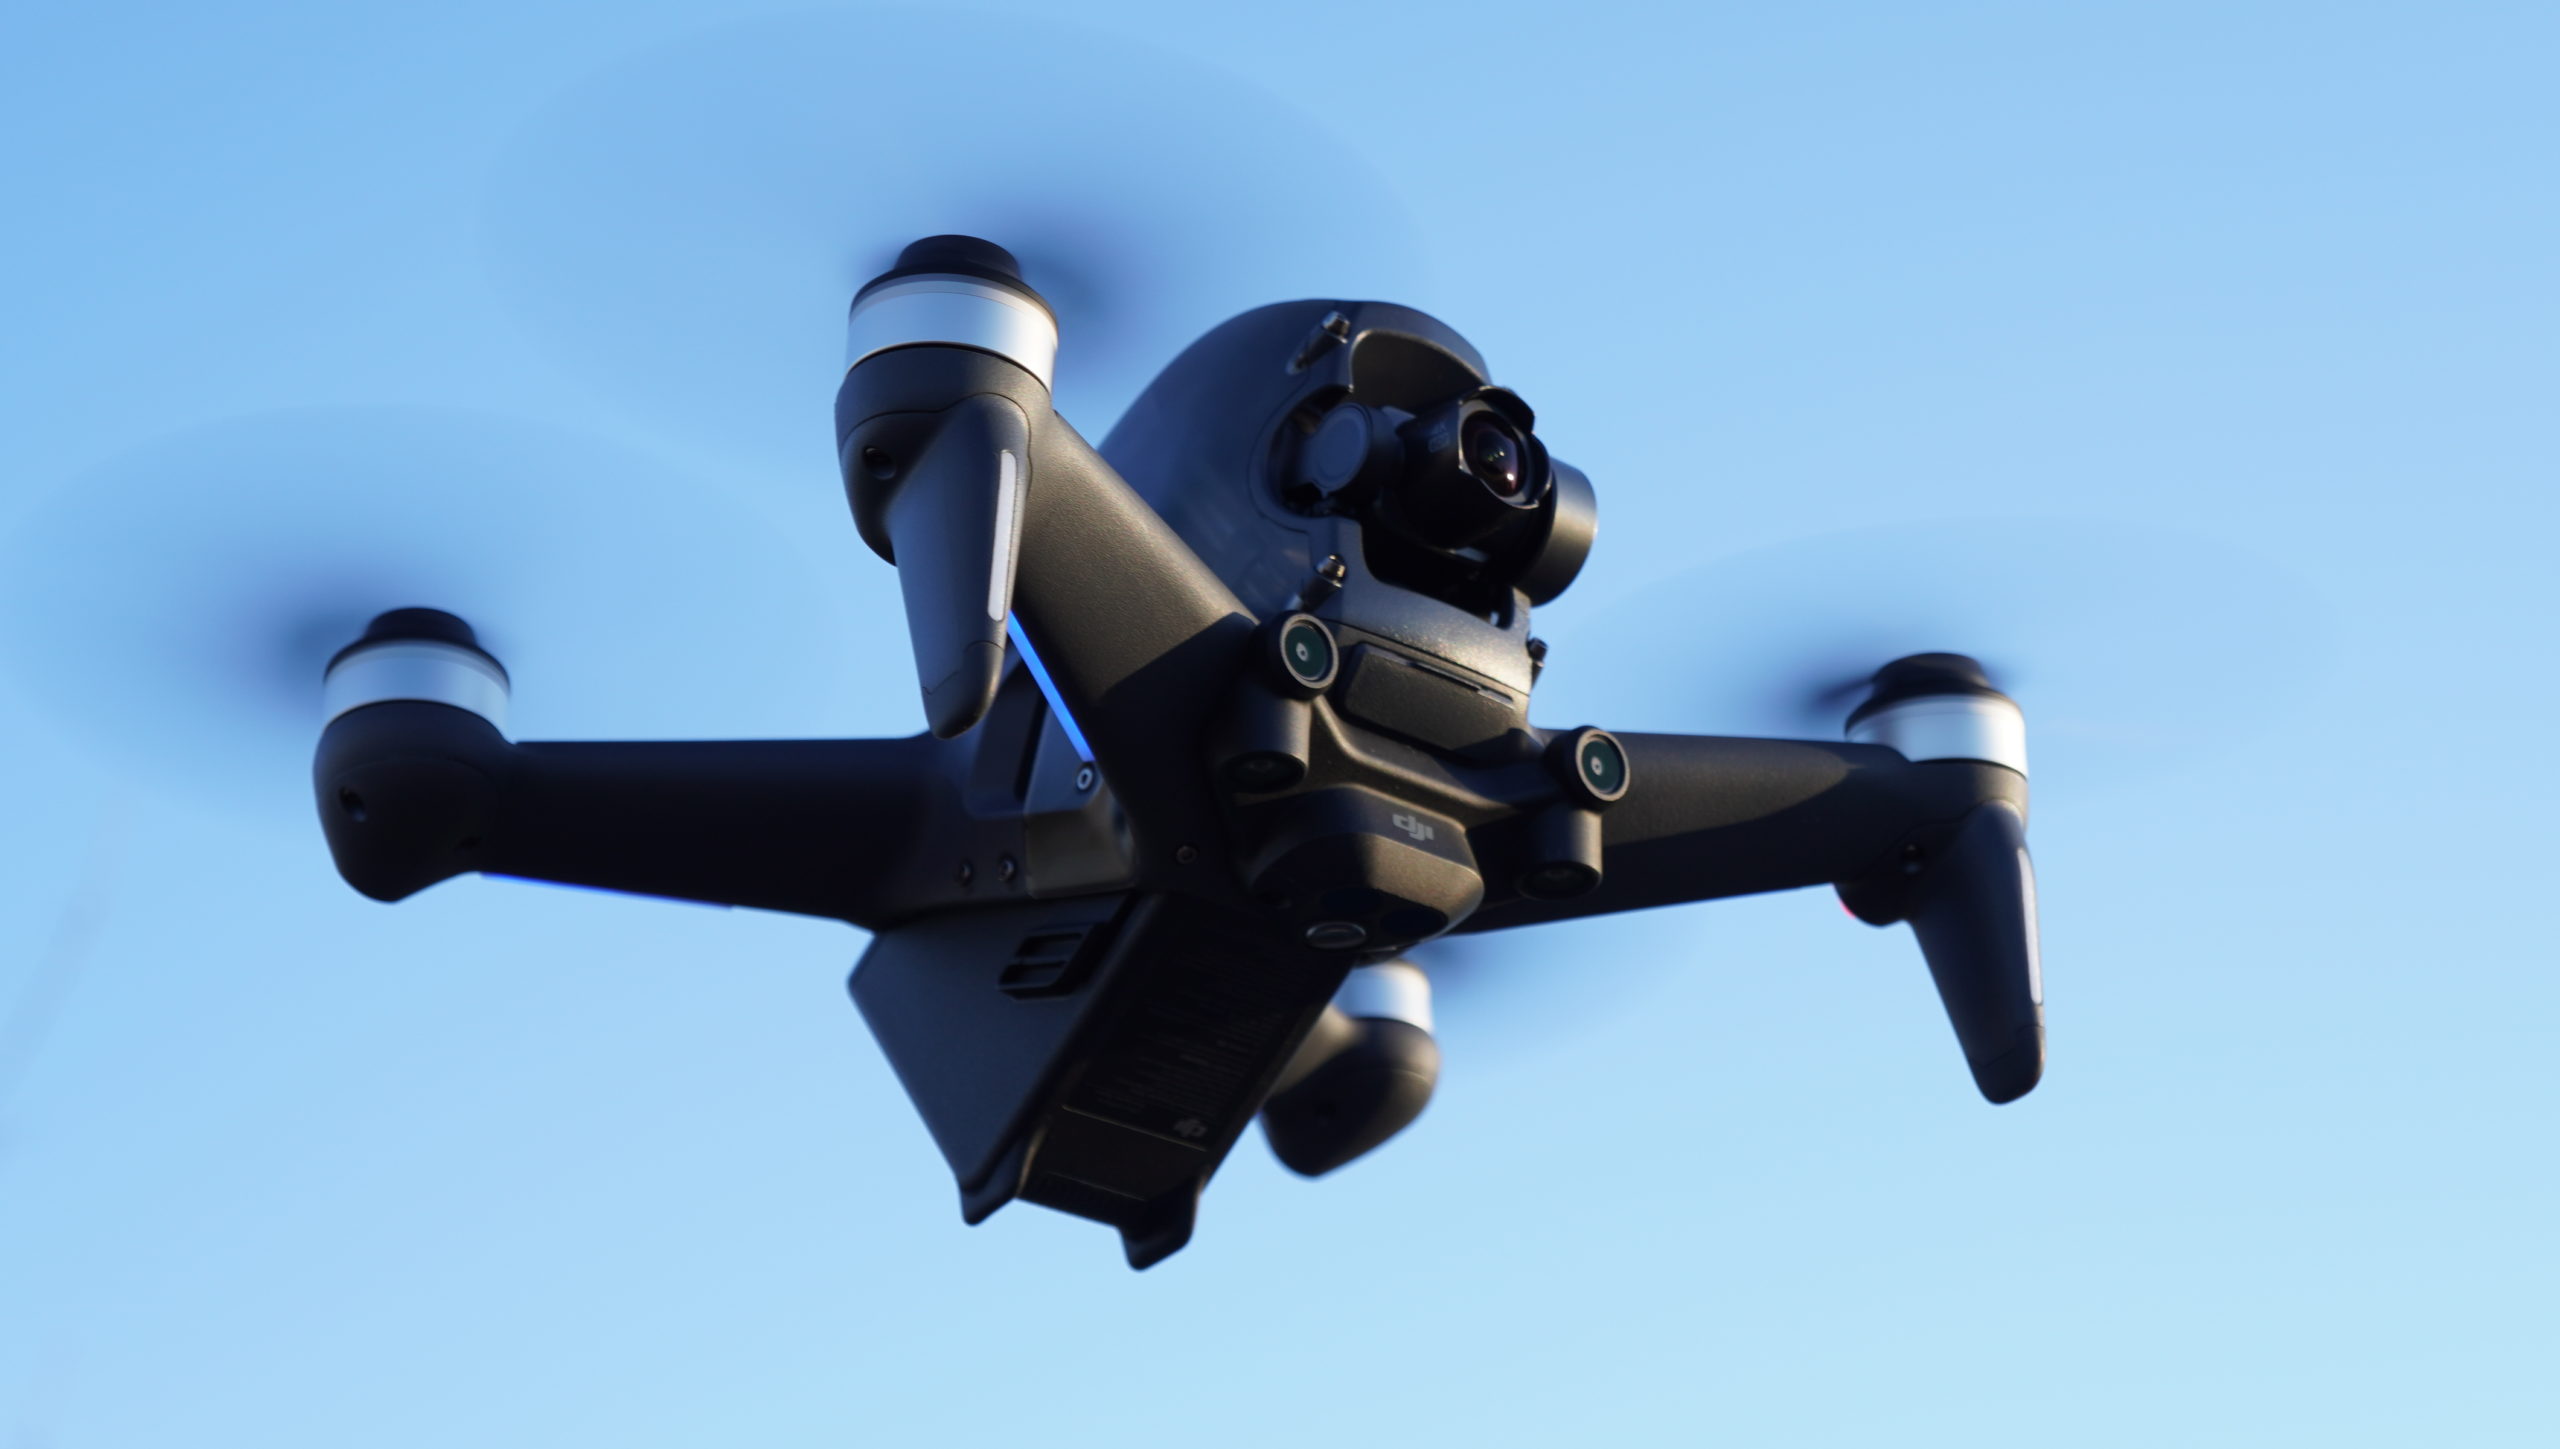 DJI FPV drone in flight